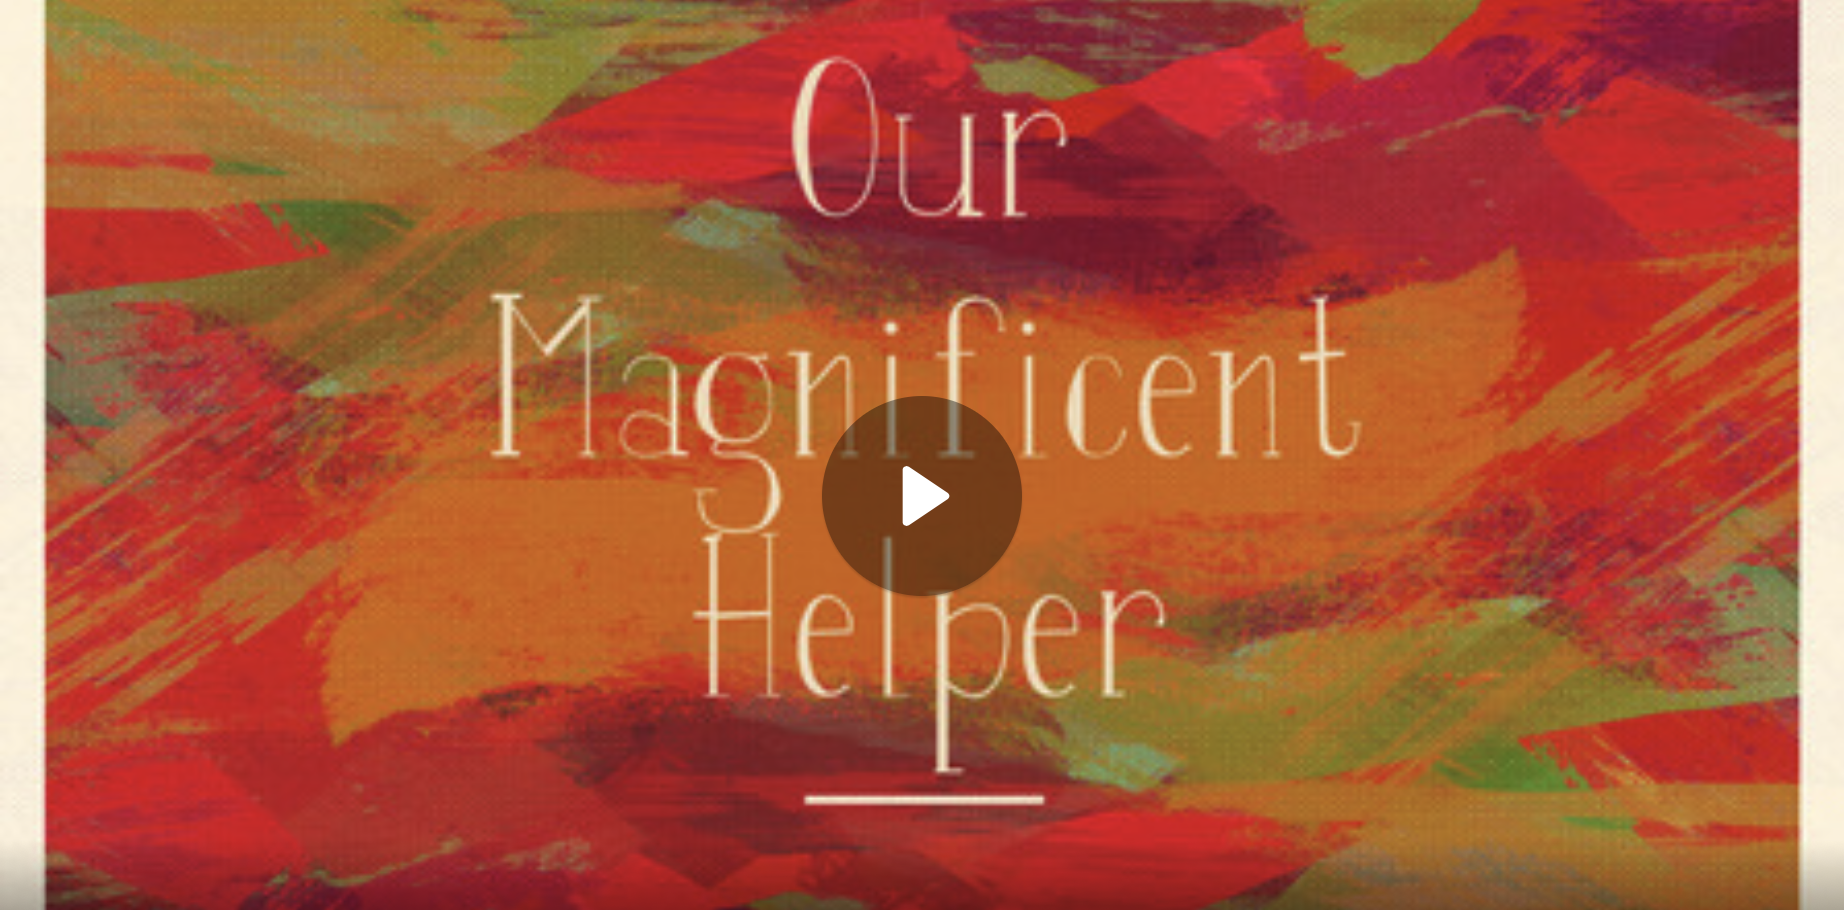 Our Magnificent Helper Pt. 8 Spirit Empowered Love